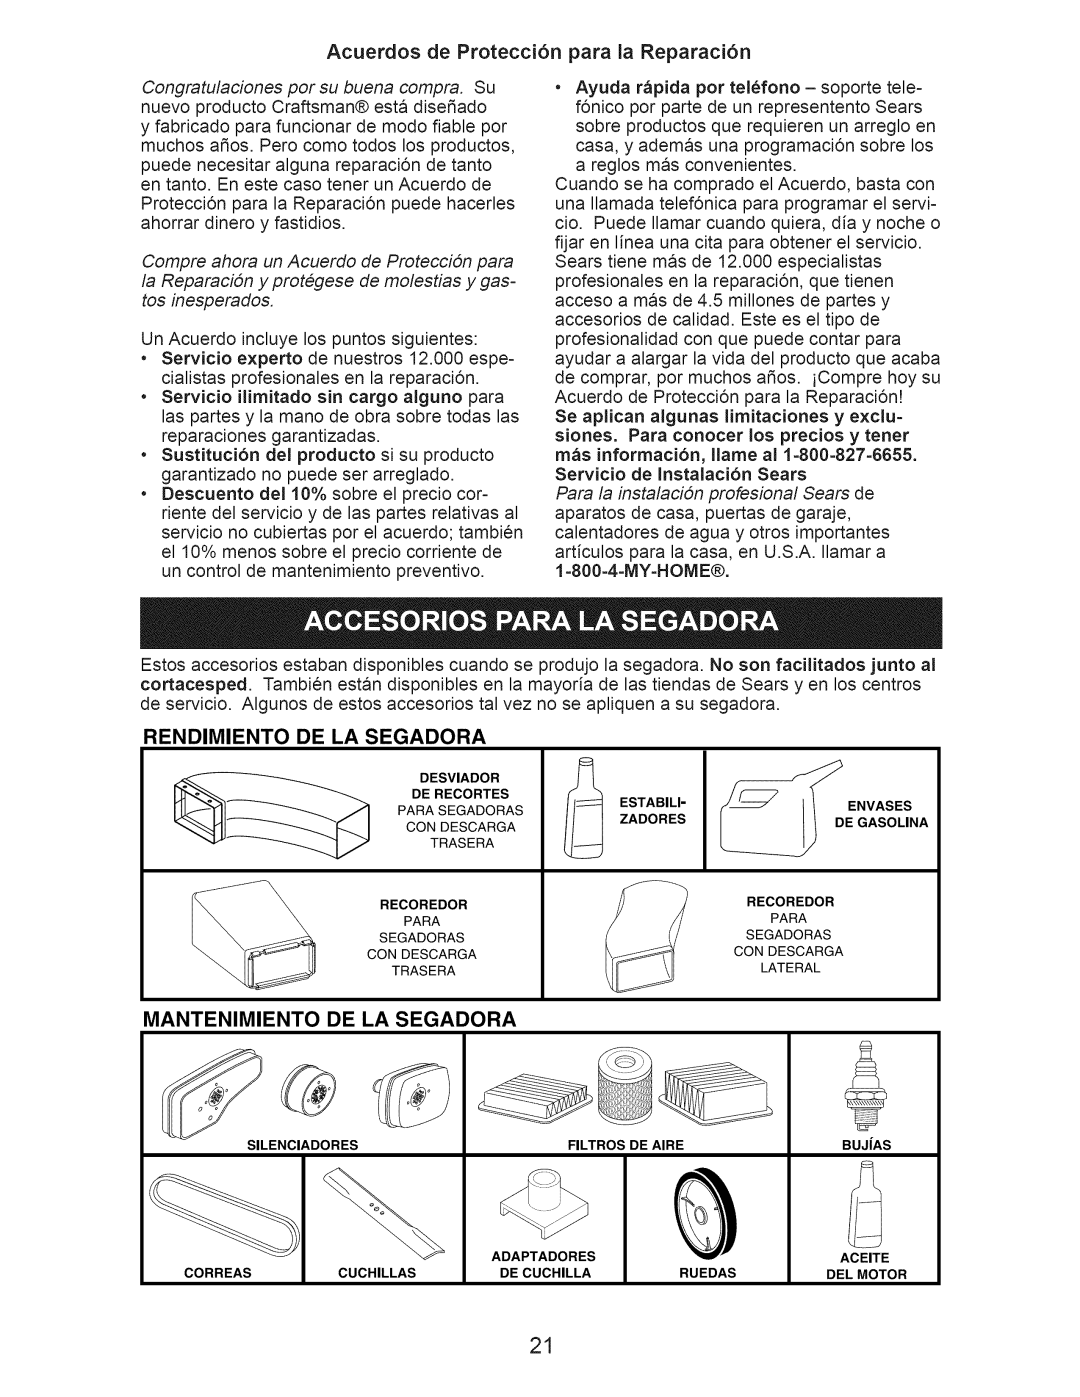 Craftsman 917.388201 owner manual Acuerdos de Protecci6n para la Reparaci6n, Rendimiento, De La Segadora, Mantenimiento 